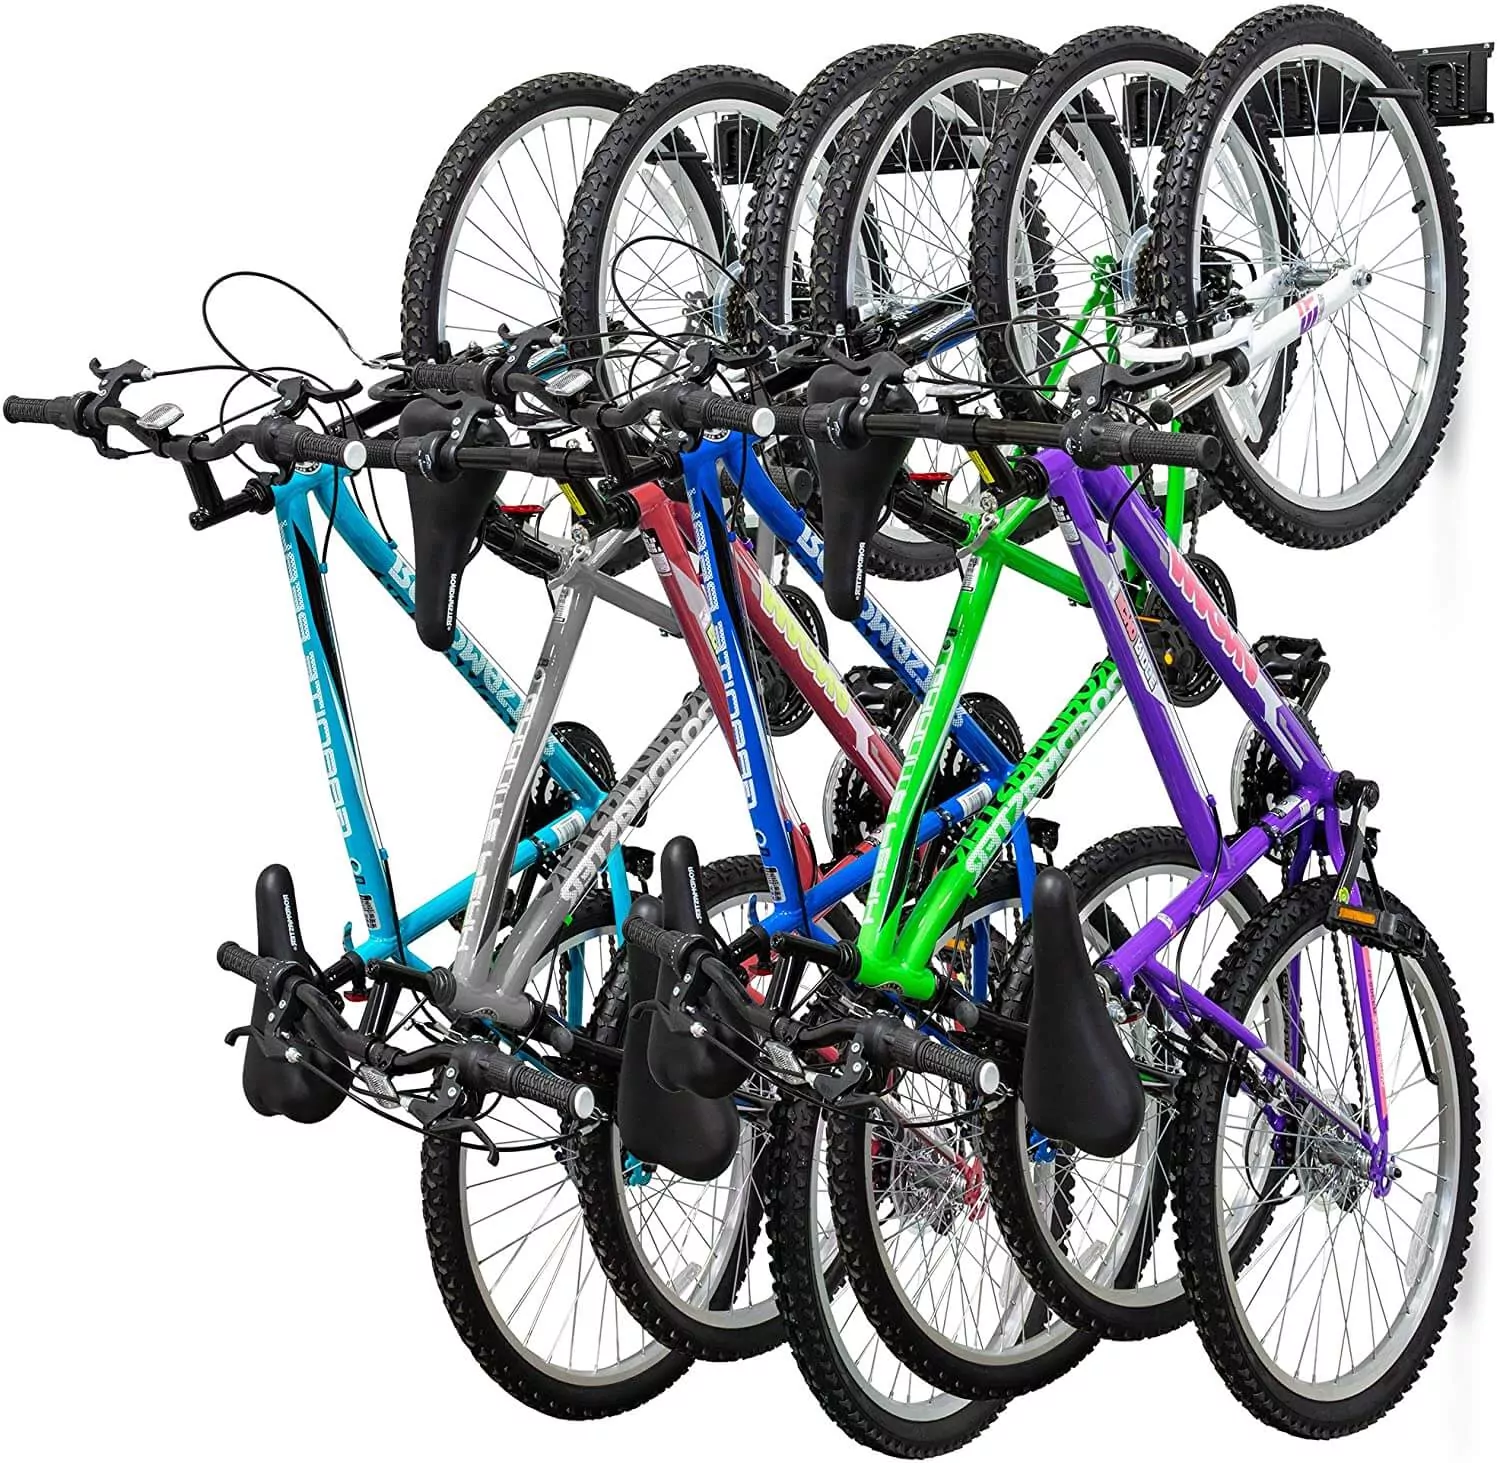 RaxGo Garage Wall-mounted Bike Rack